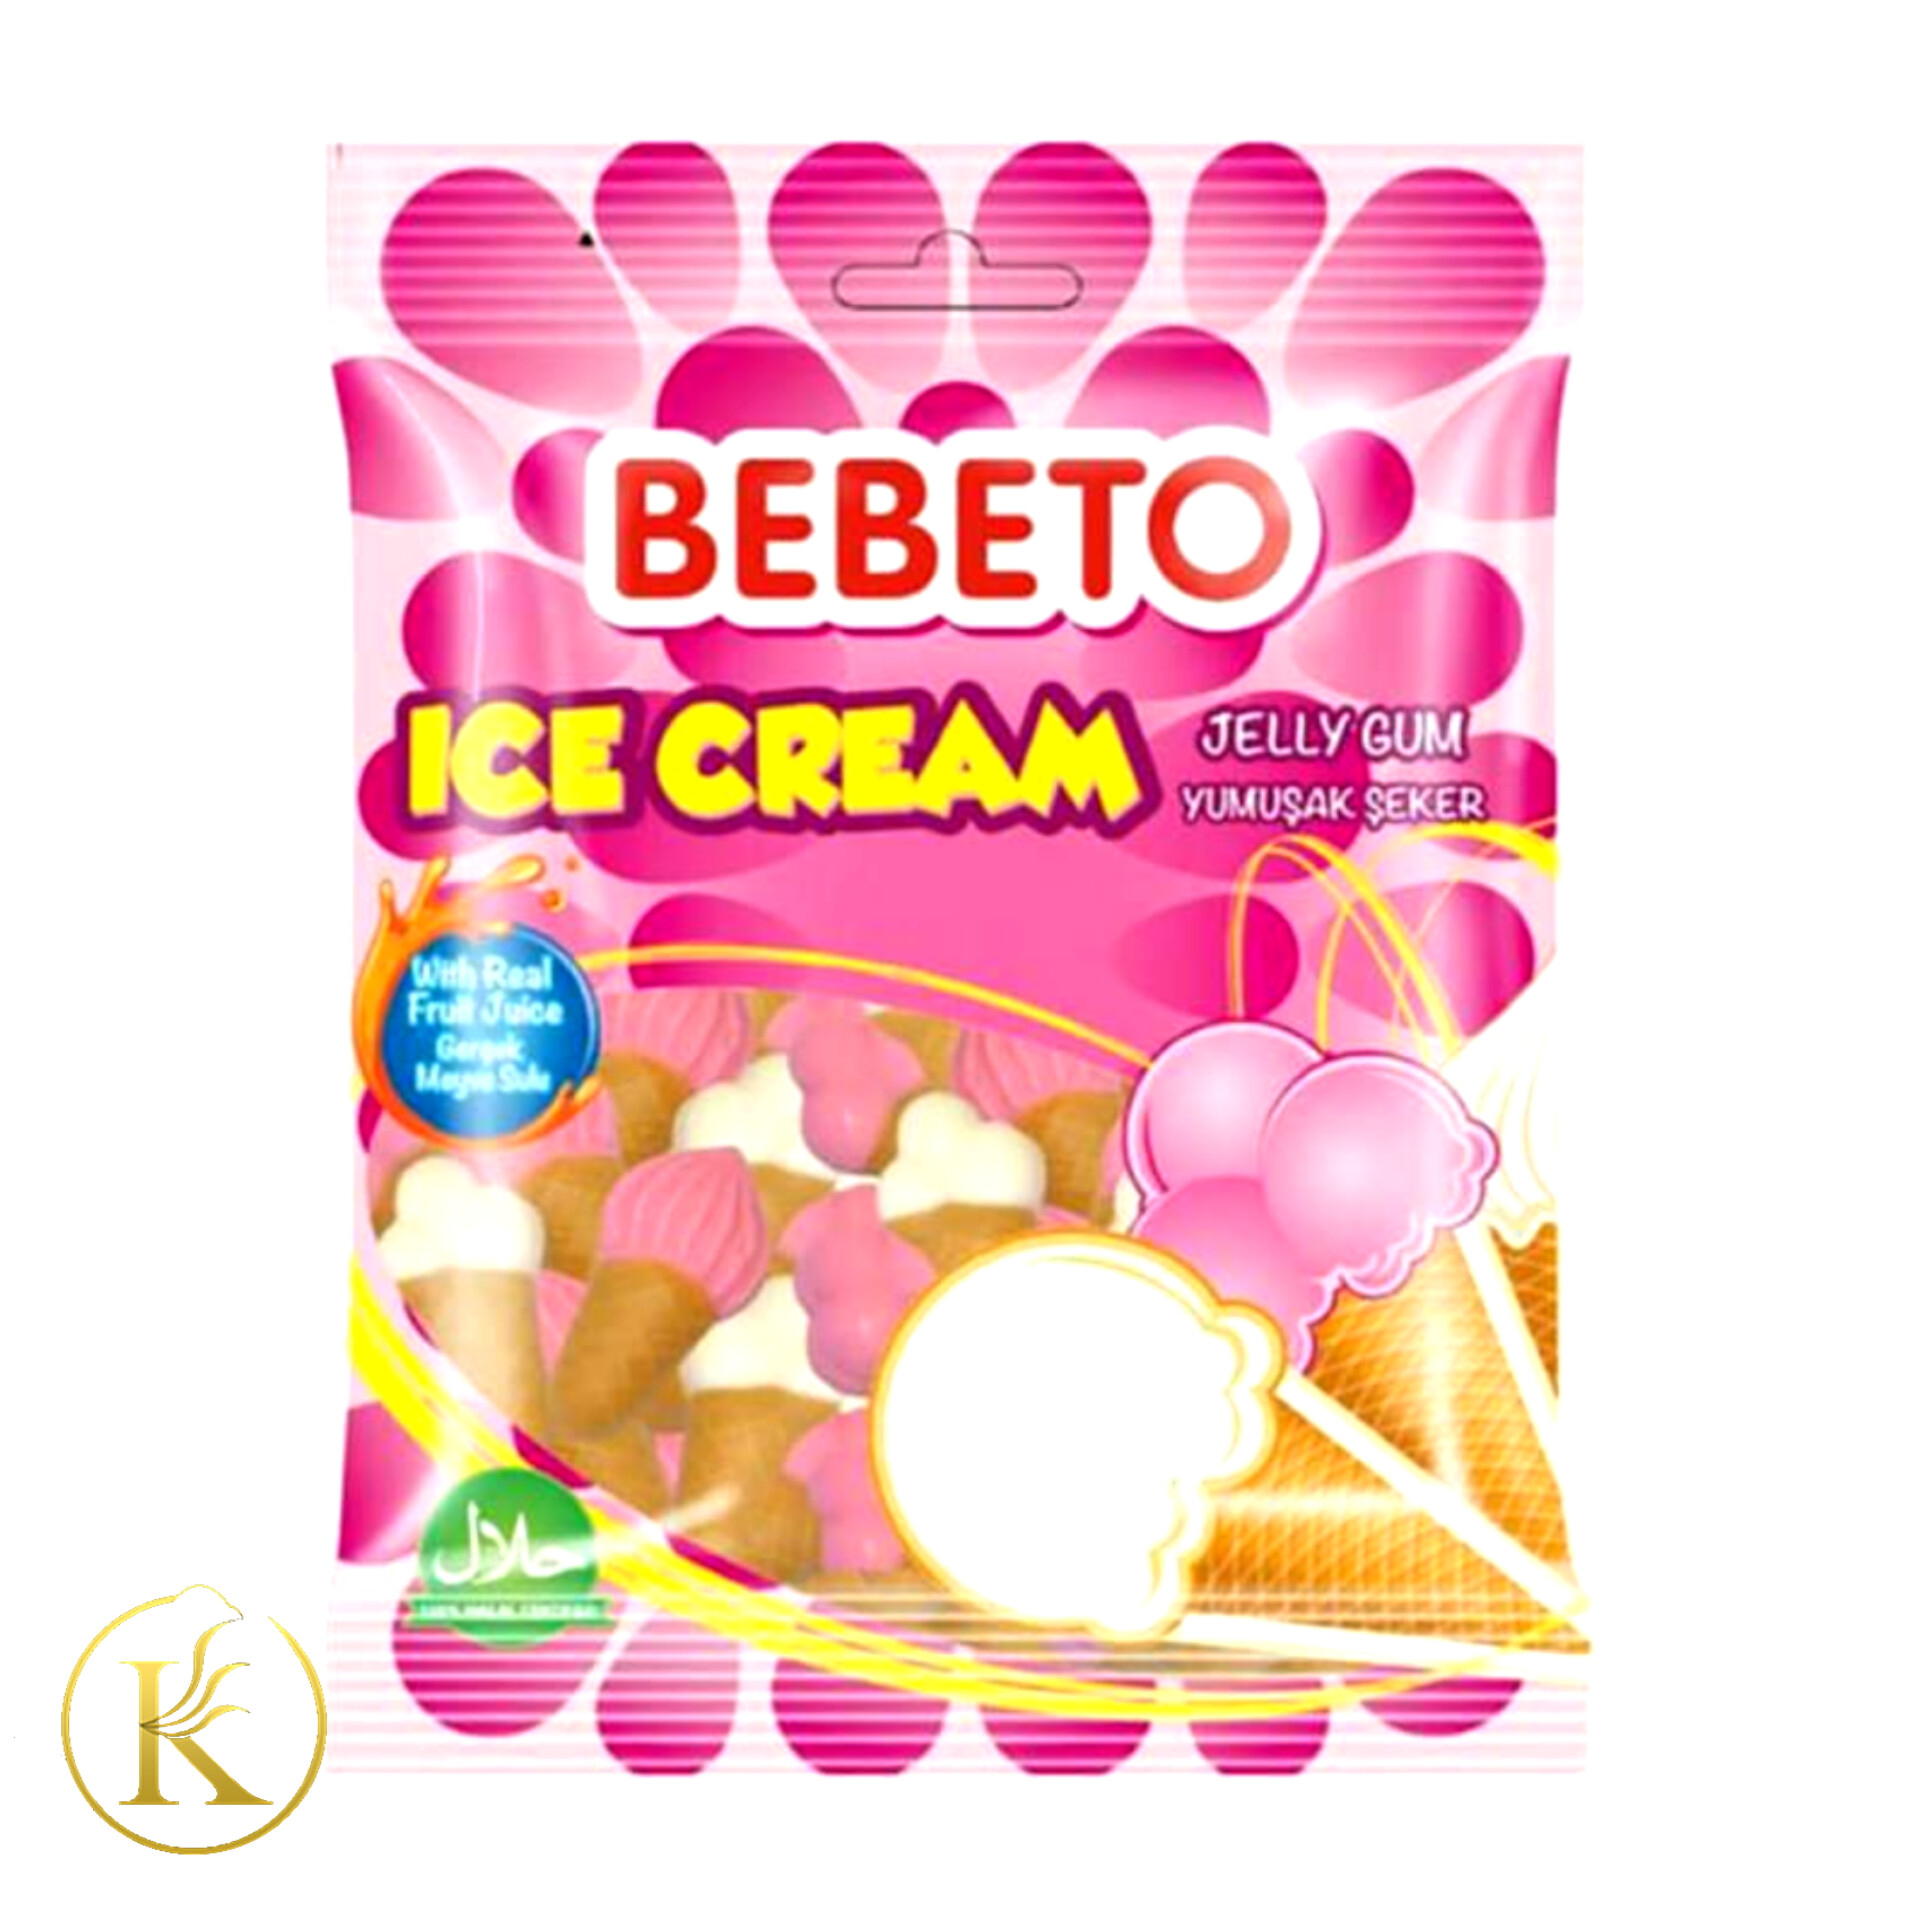 پاستیل ببتو بستنی ۸۰ گرمی bebeto